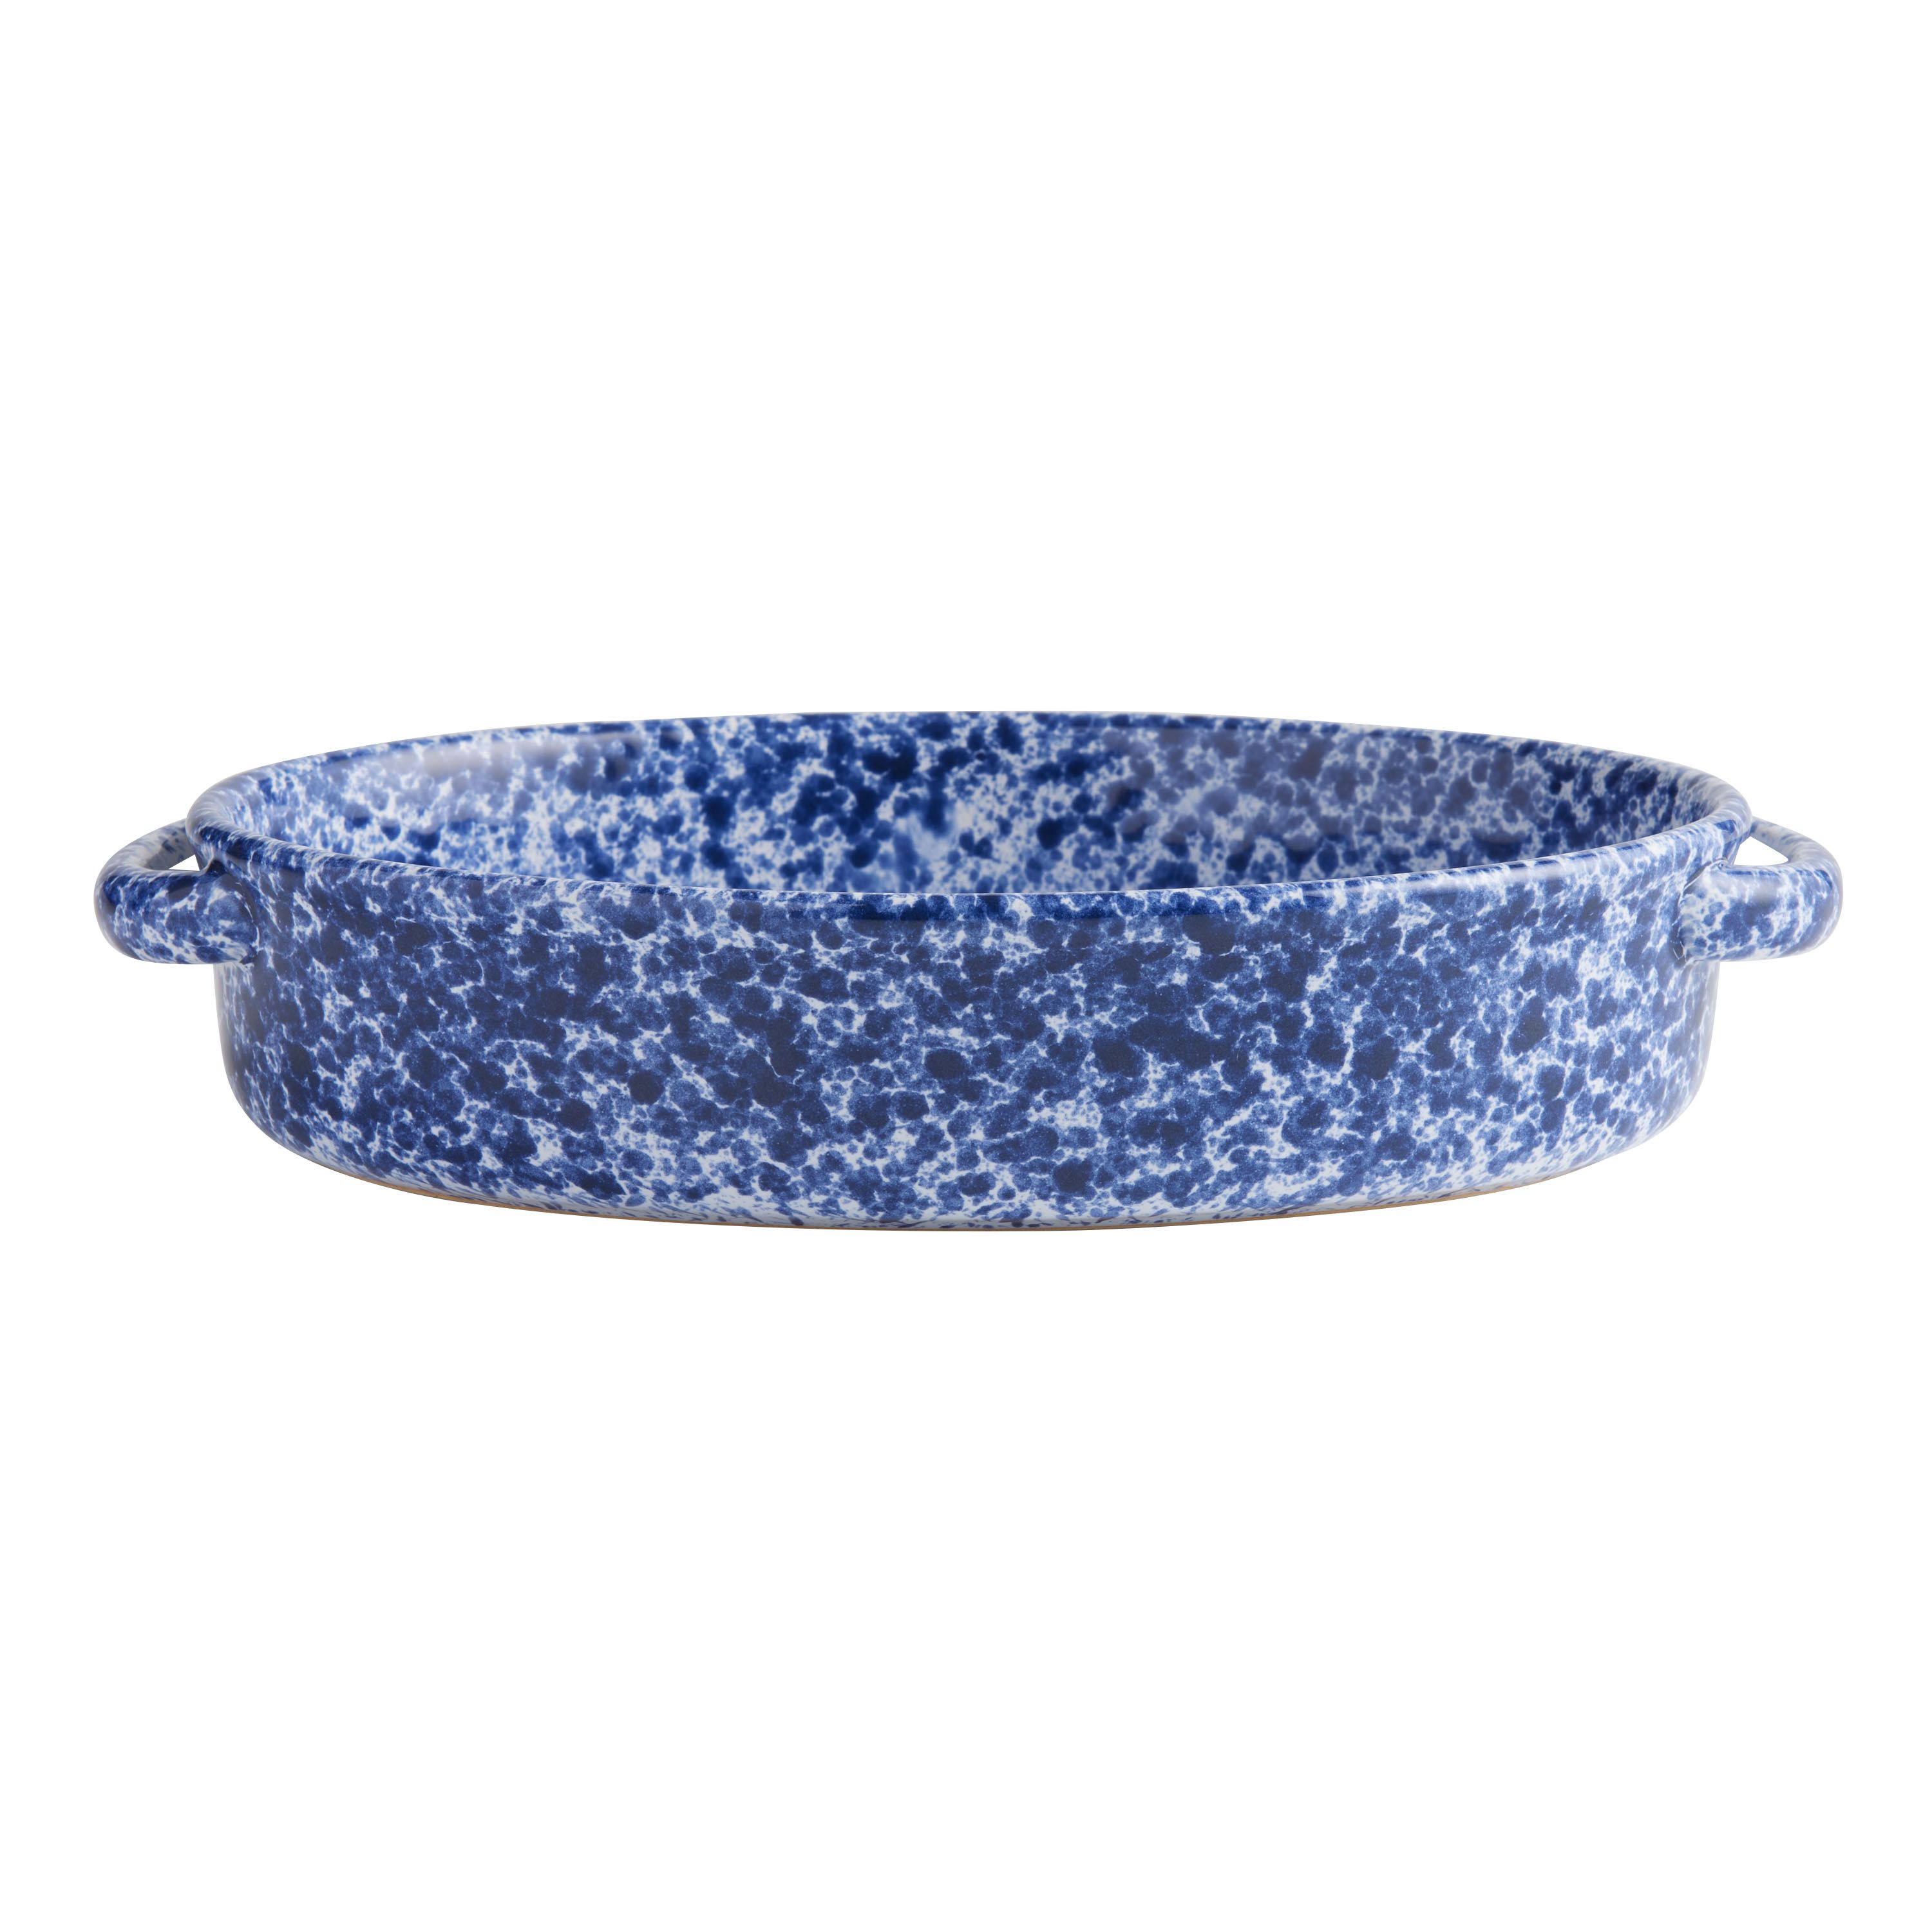 Awaken Oval Blue and White Speckled Ceramic Baker | World Market